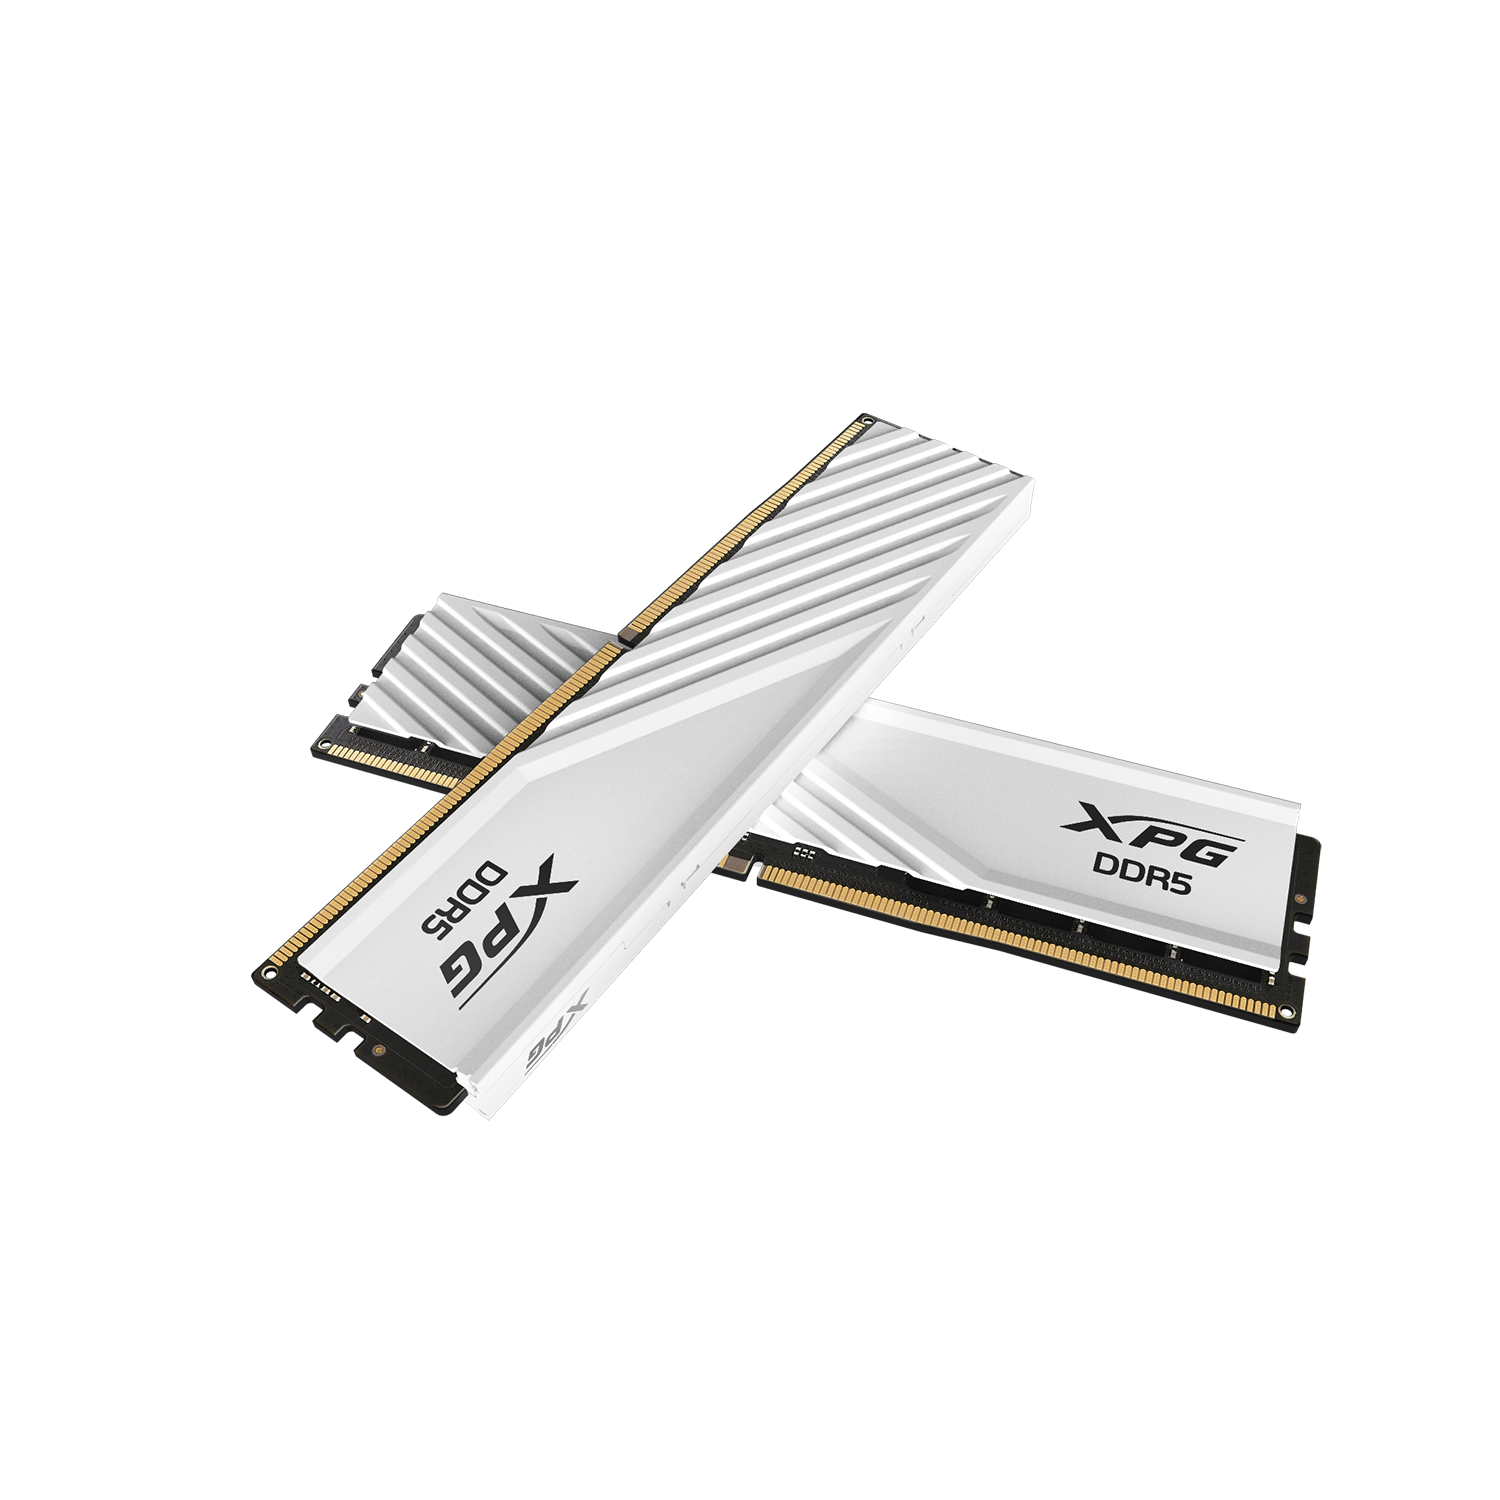 LANCER BLADE DDR5 Memory | XPG